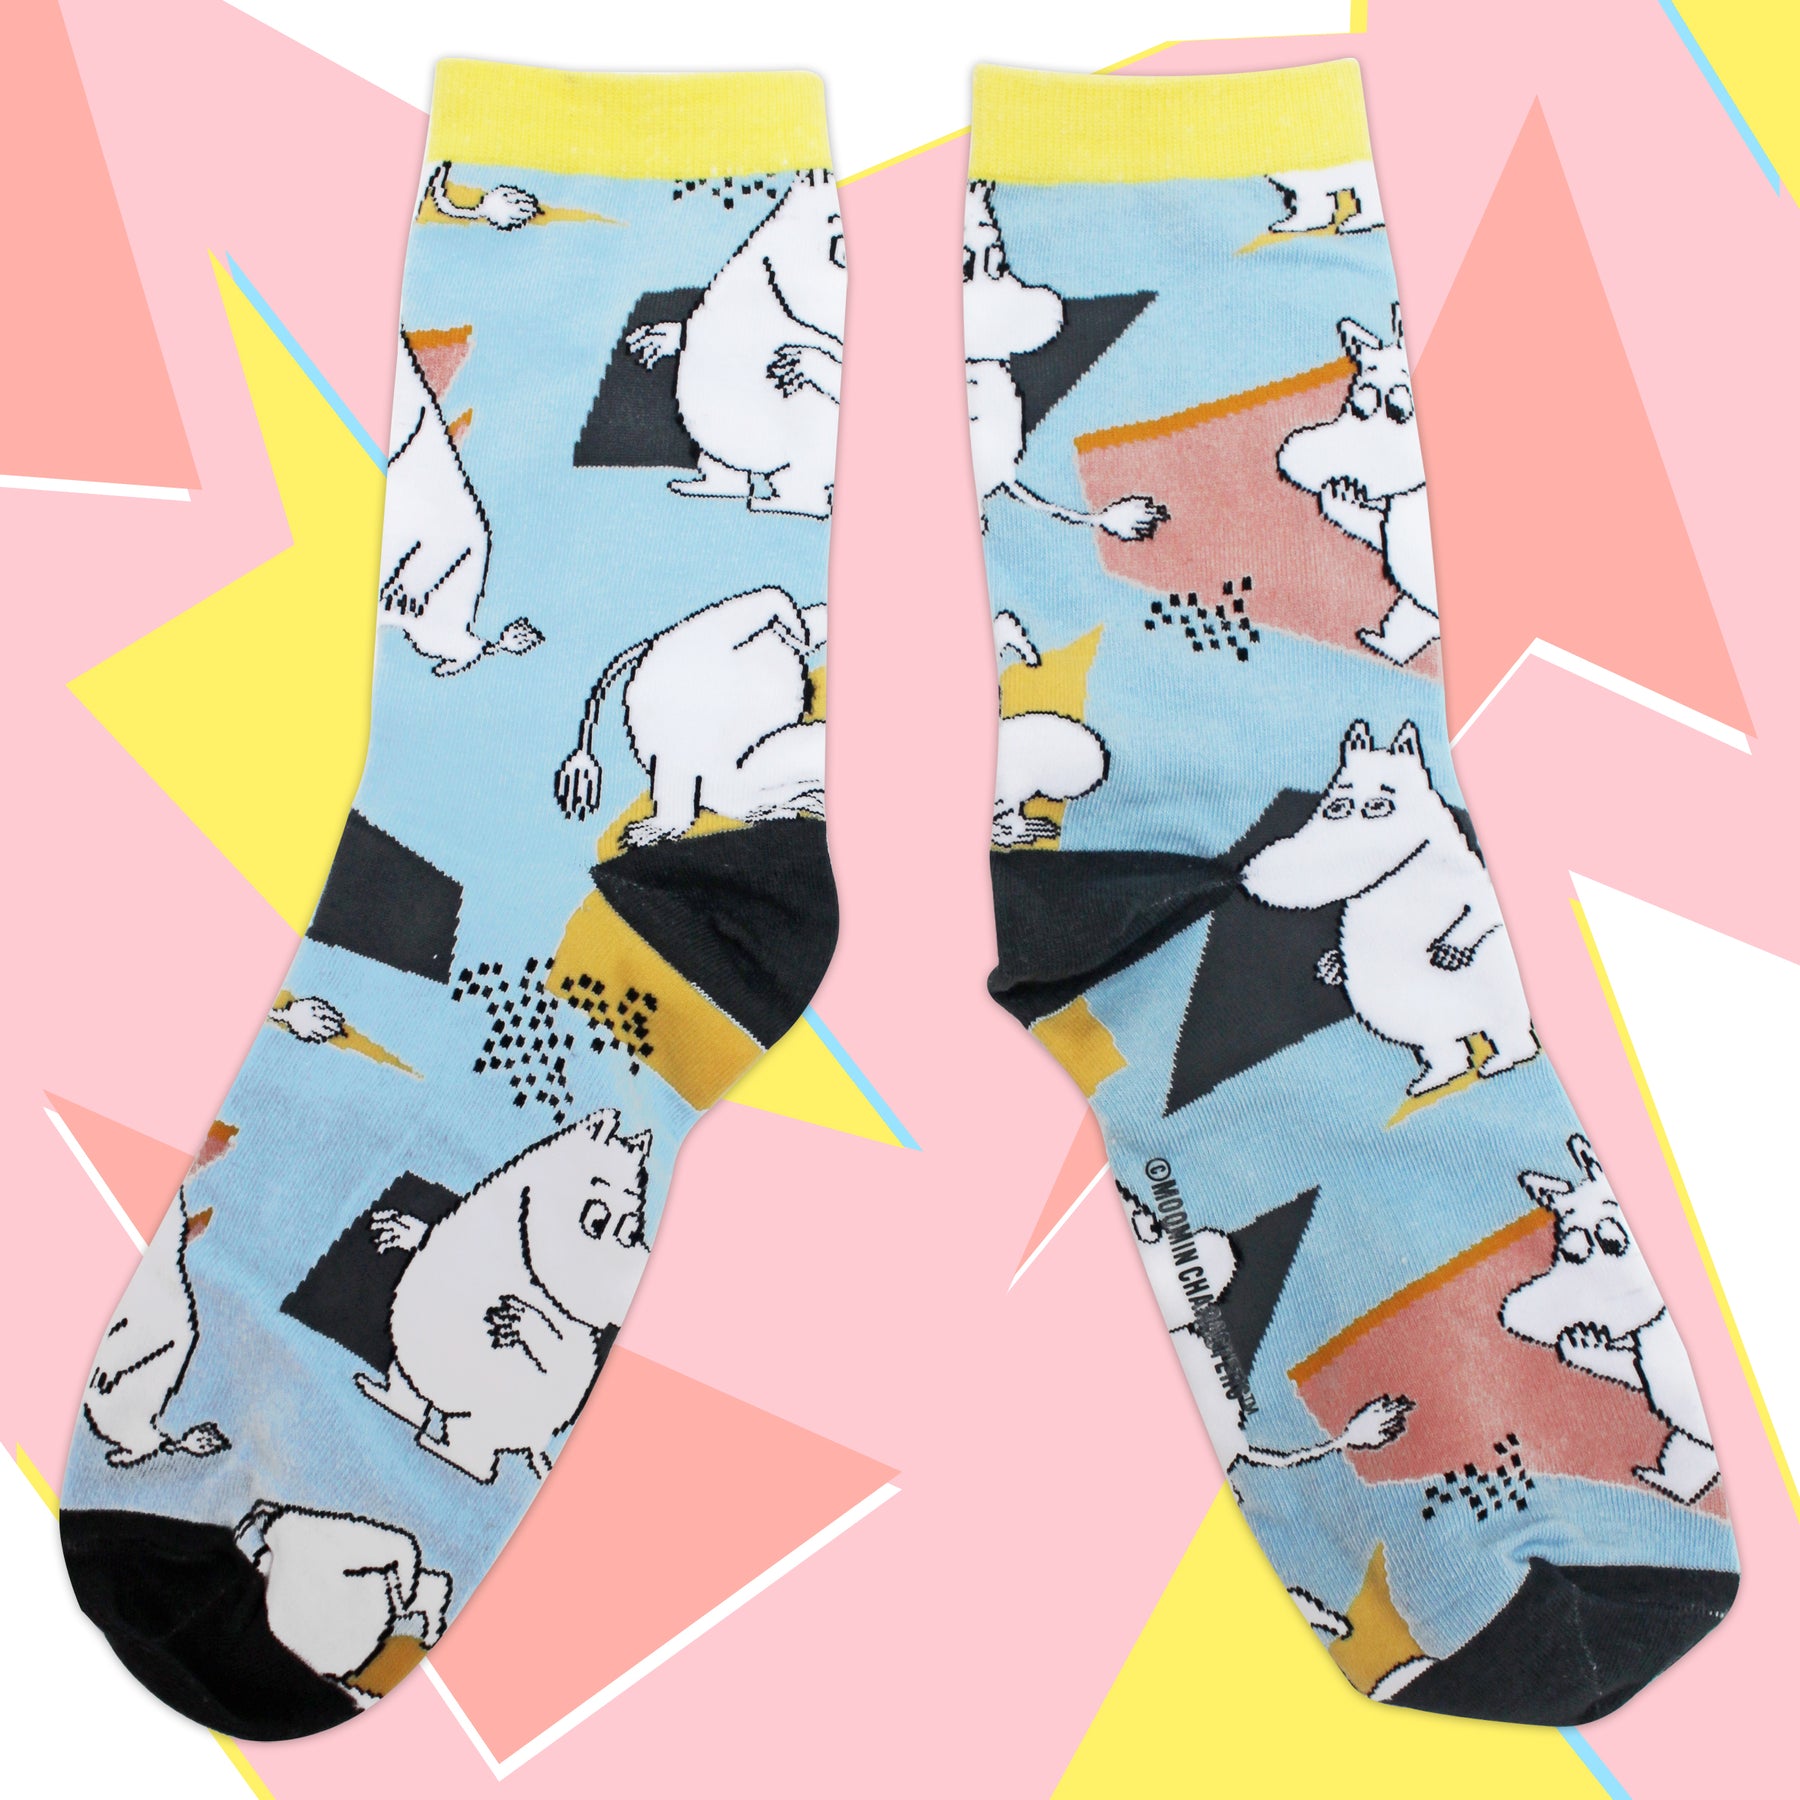 Moomin Socks Abstract